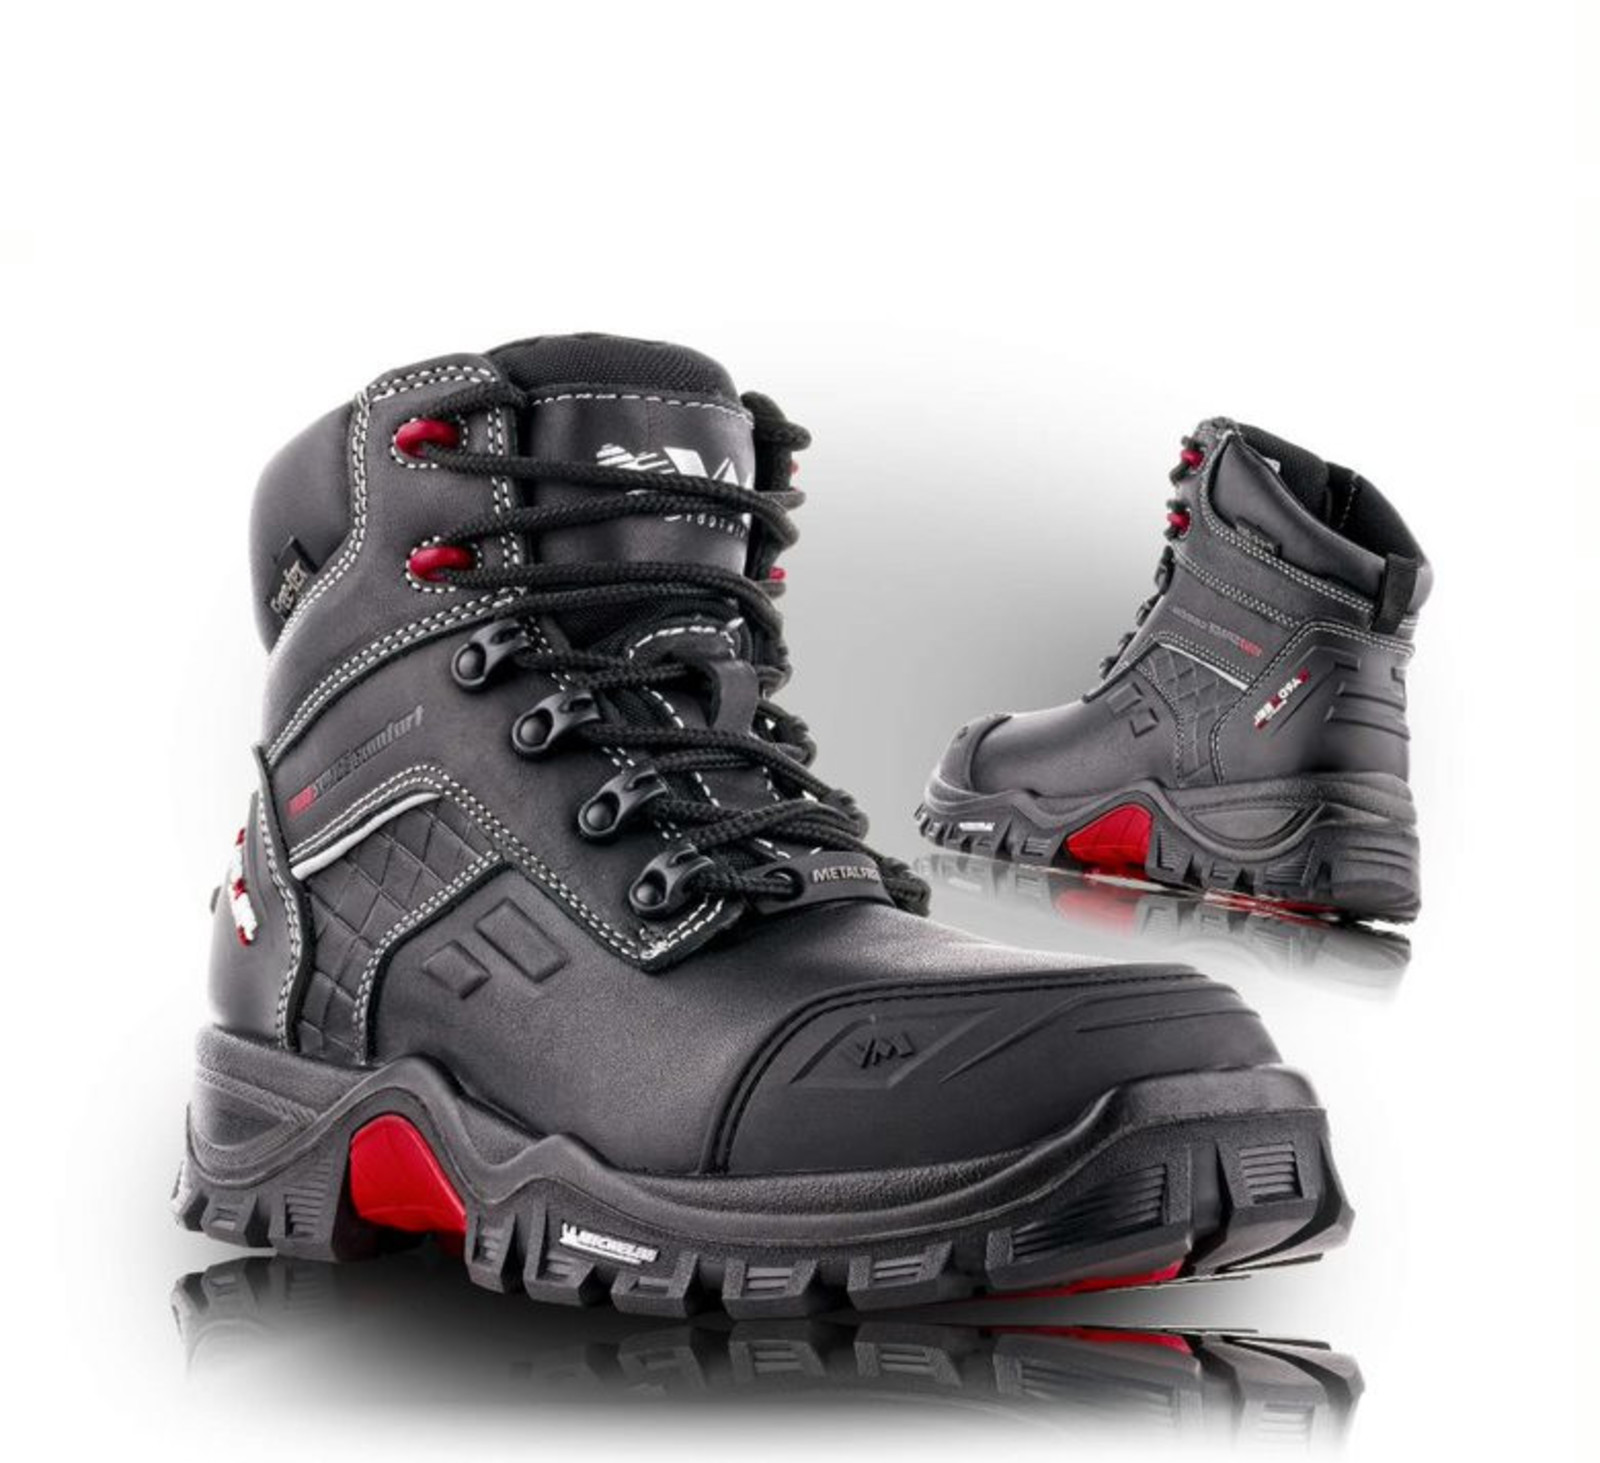 Bezpečnostná obuv Michelin® Rockford S3 s membránou - veľkosť: 41, farba: čierna